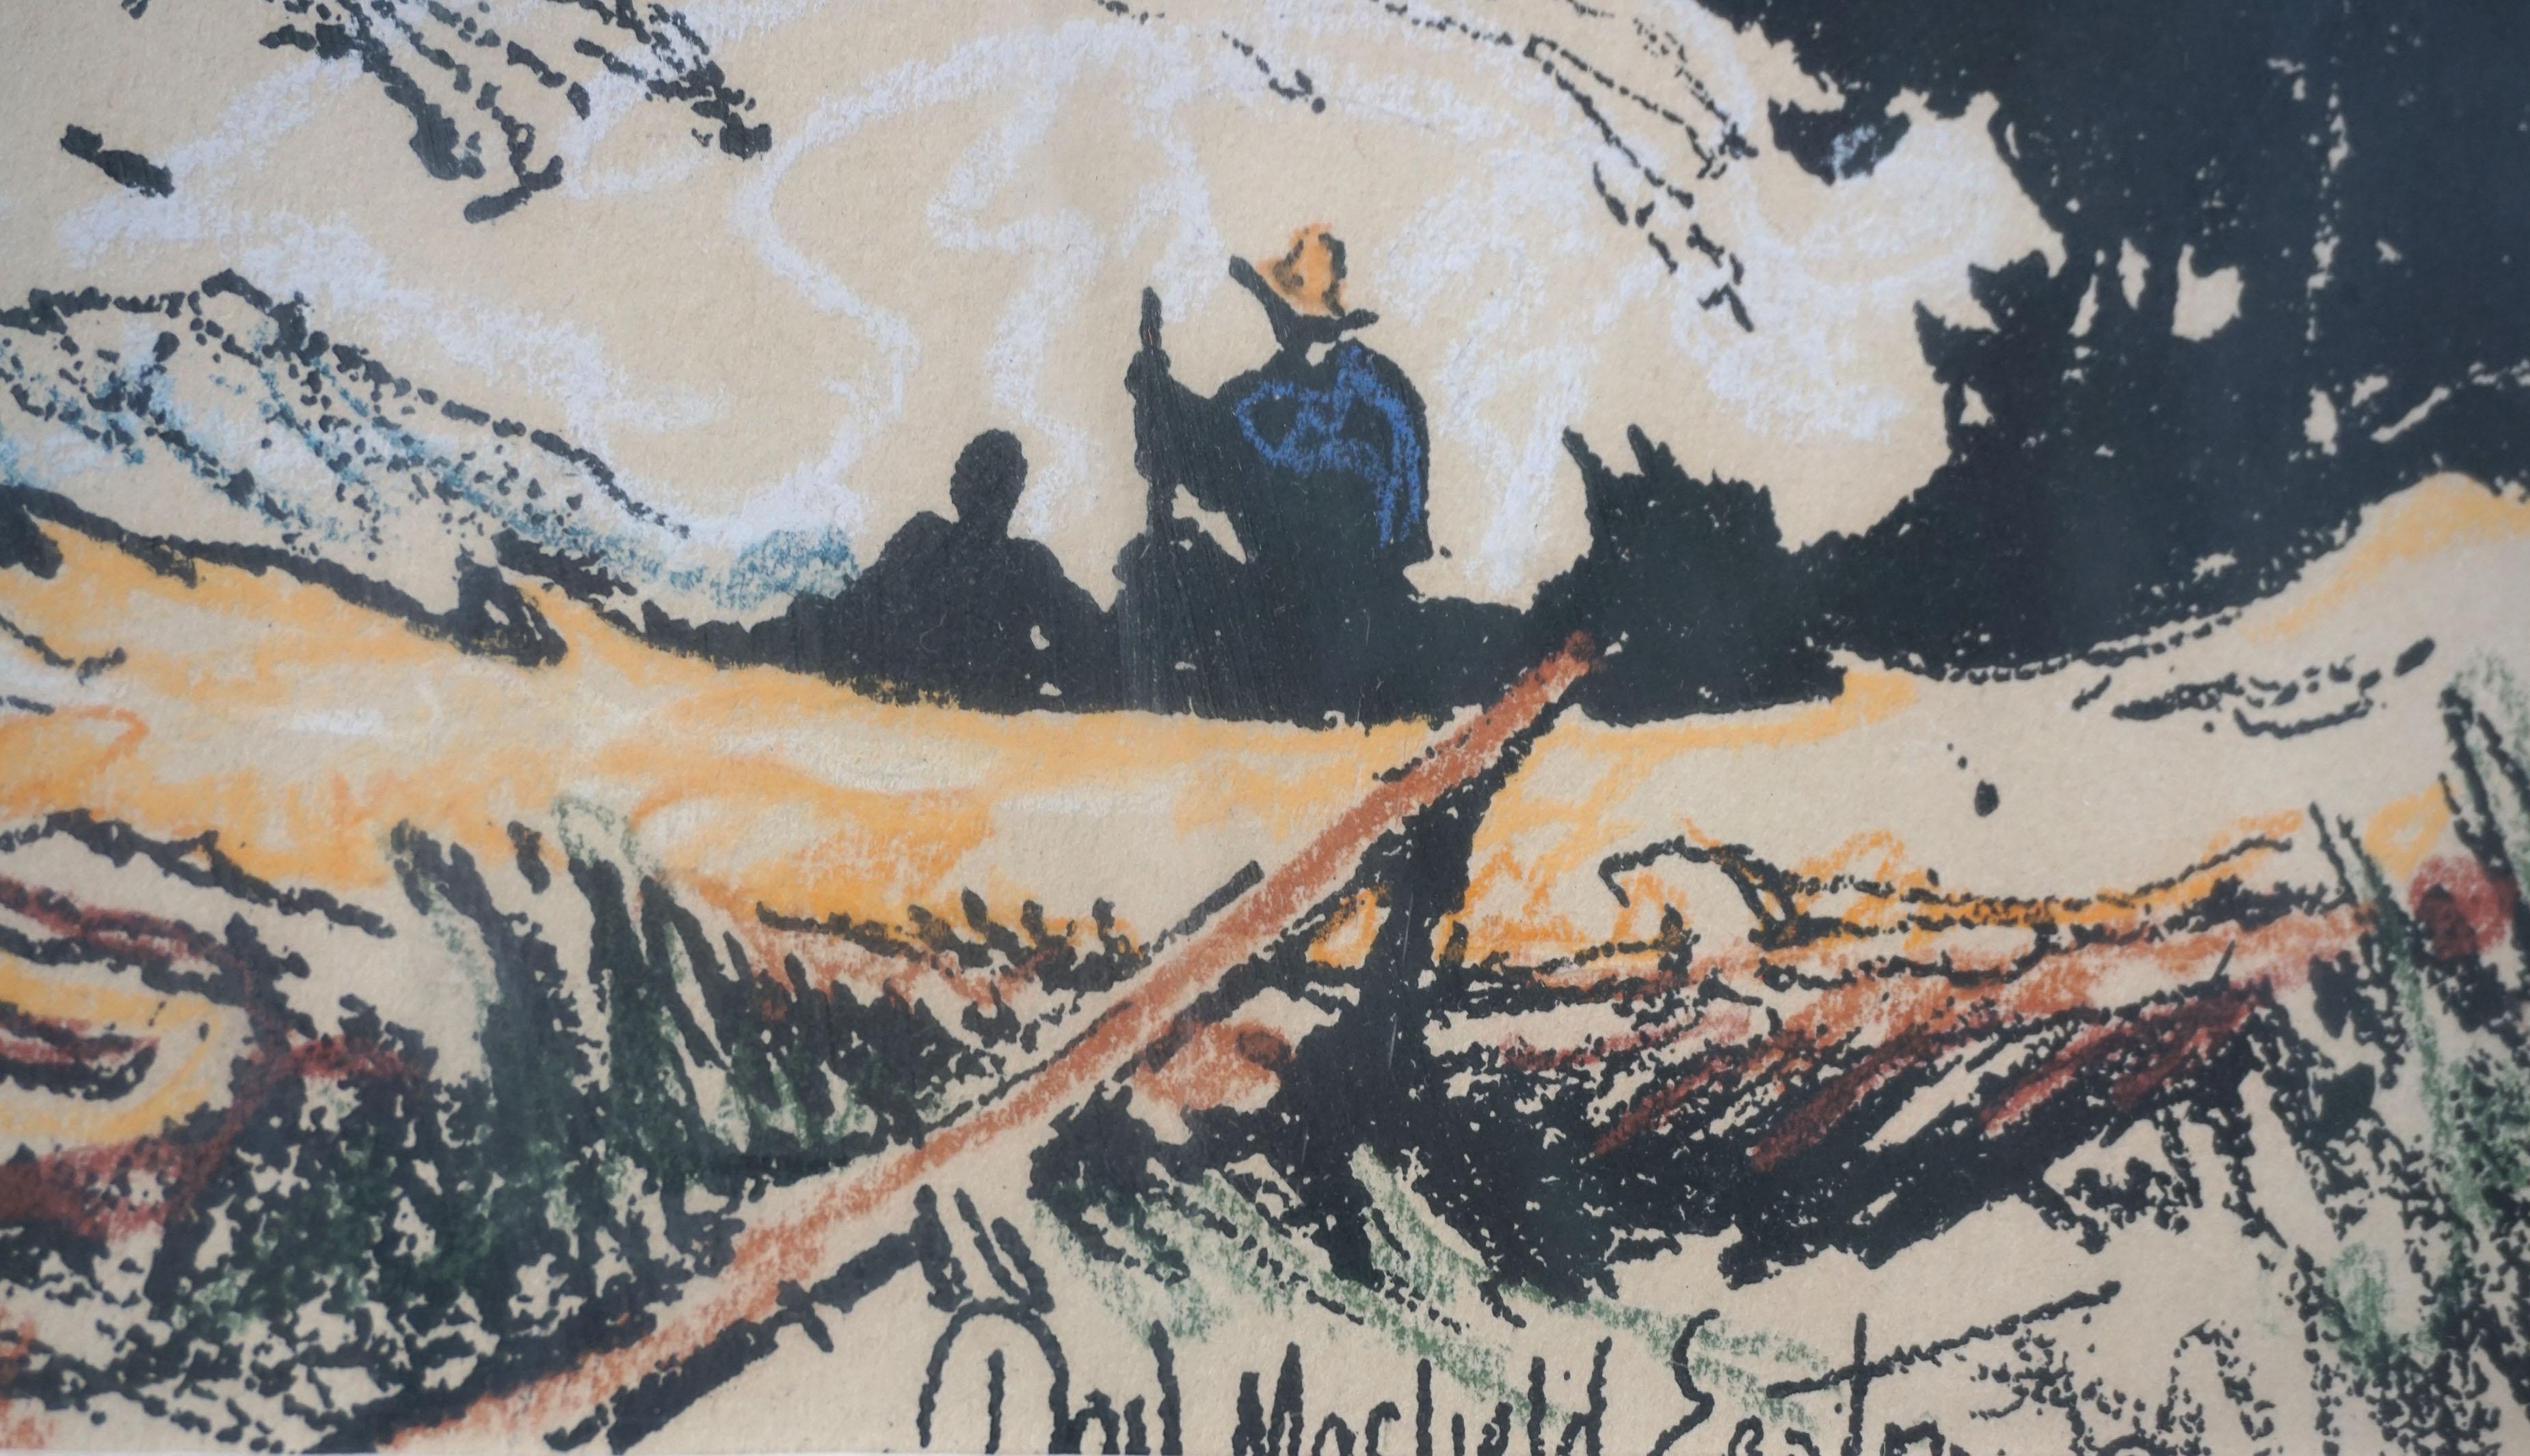 Wunderschöne handkolorierte Lithografie einer Campingszene in den Sierra Mountains von Donald Masefield Easton (Amerikaner, 1896 - 1956), veröffentlicht 1931. Signiert unten rechts (teilweise durch Matte verdeckt). Präsentiert in einem rustikalen